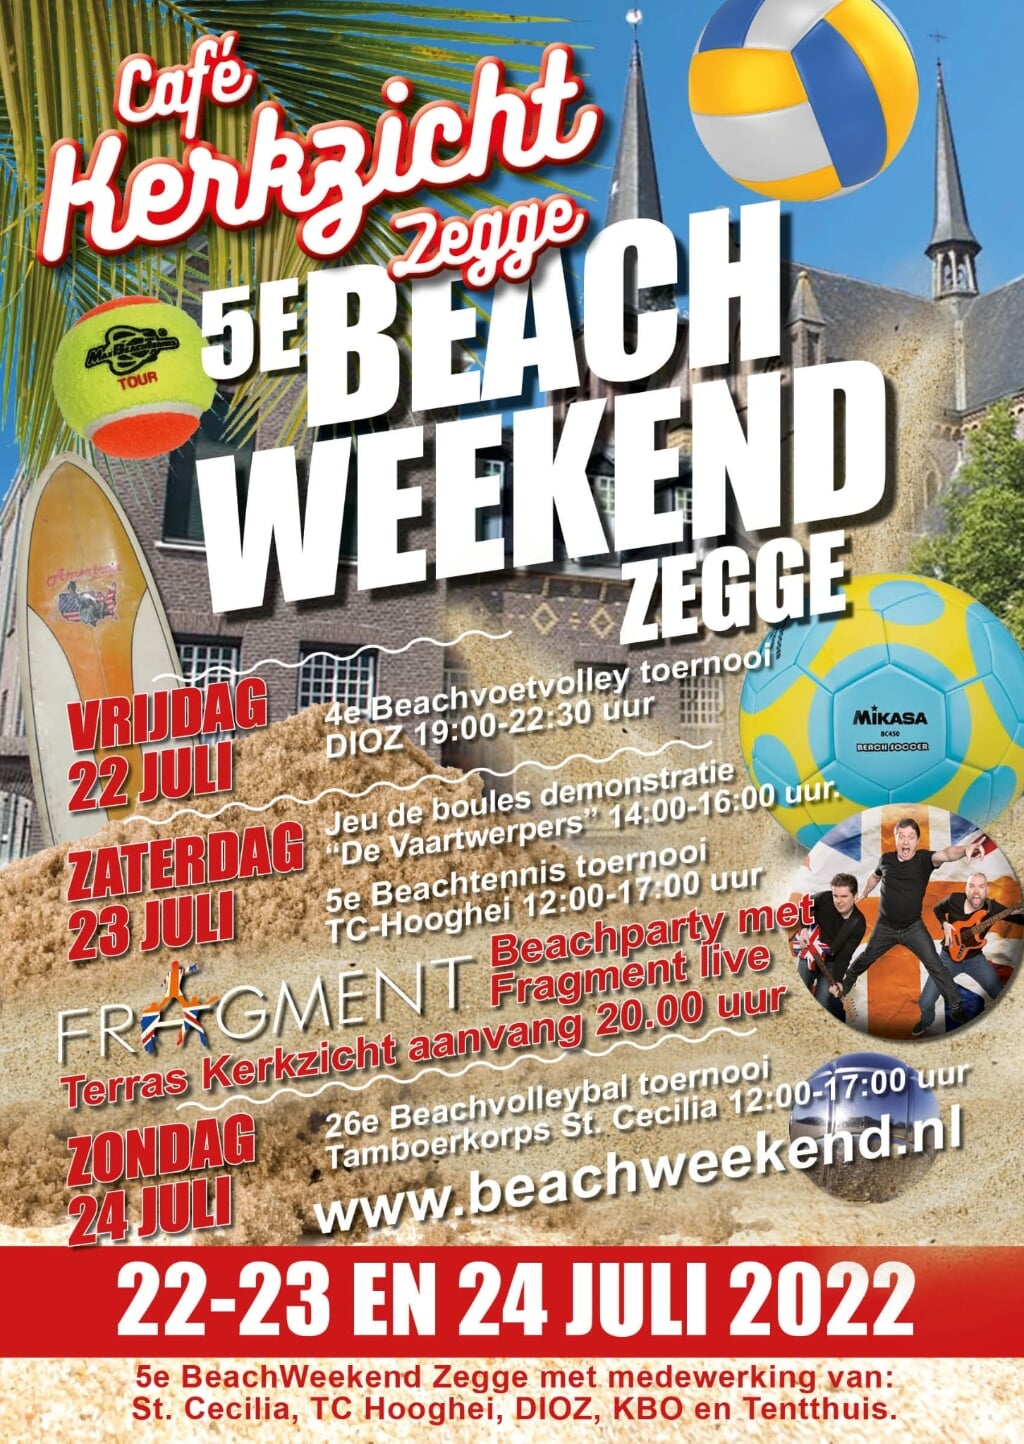 Het programma van het beachweekend 2022